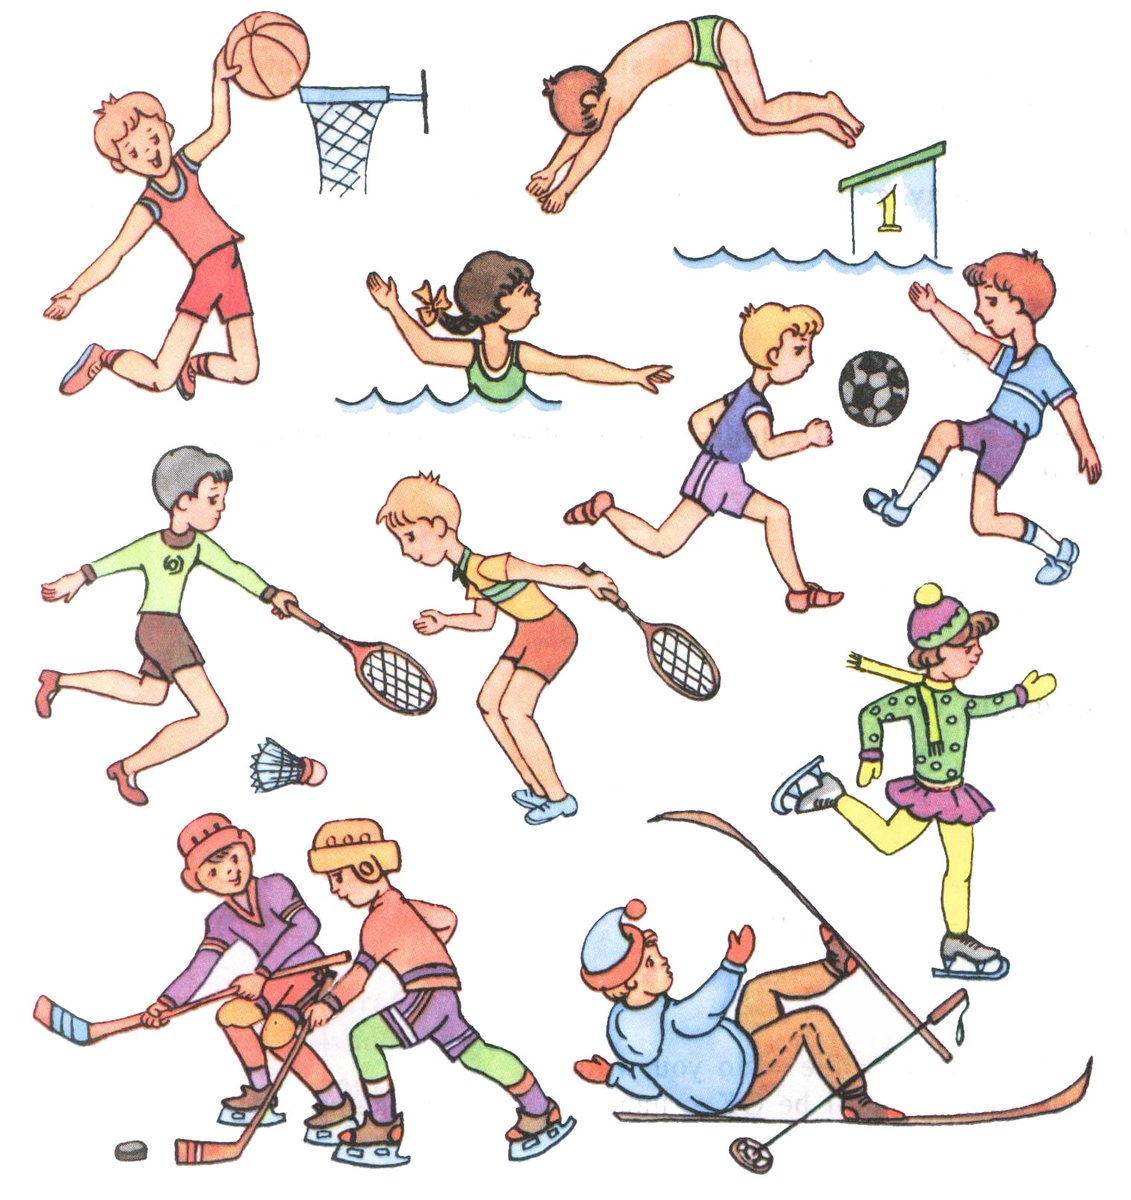 На рисунке показано несколько 1 движений игры. Занятие спортом рисунок. Физическая культура. Спортивные рисунки для детей. Занятие спортом картинки для детей.